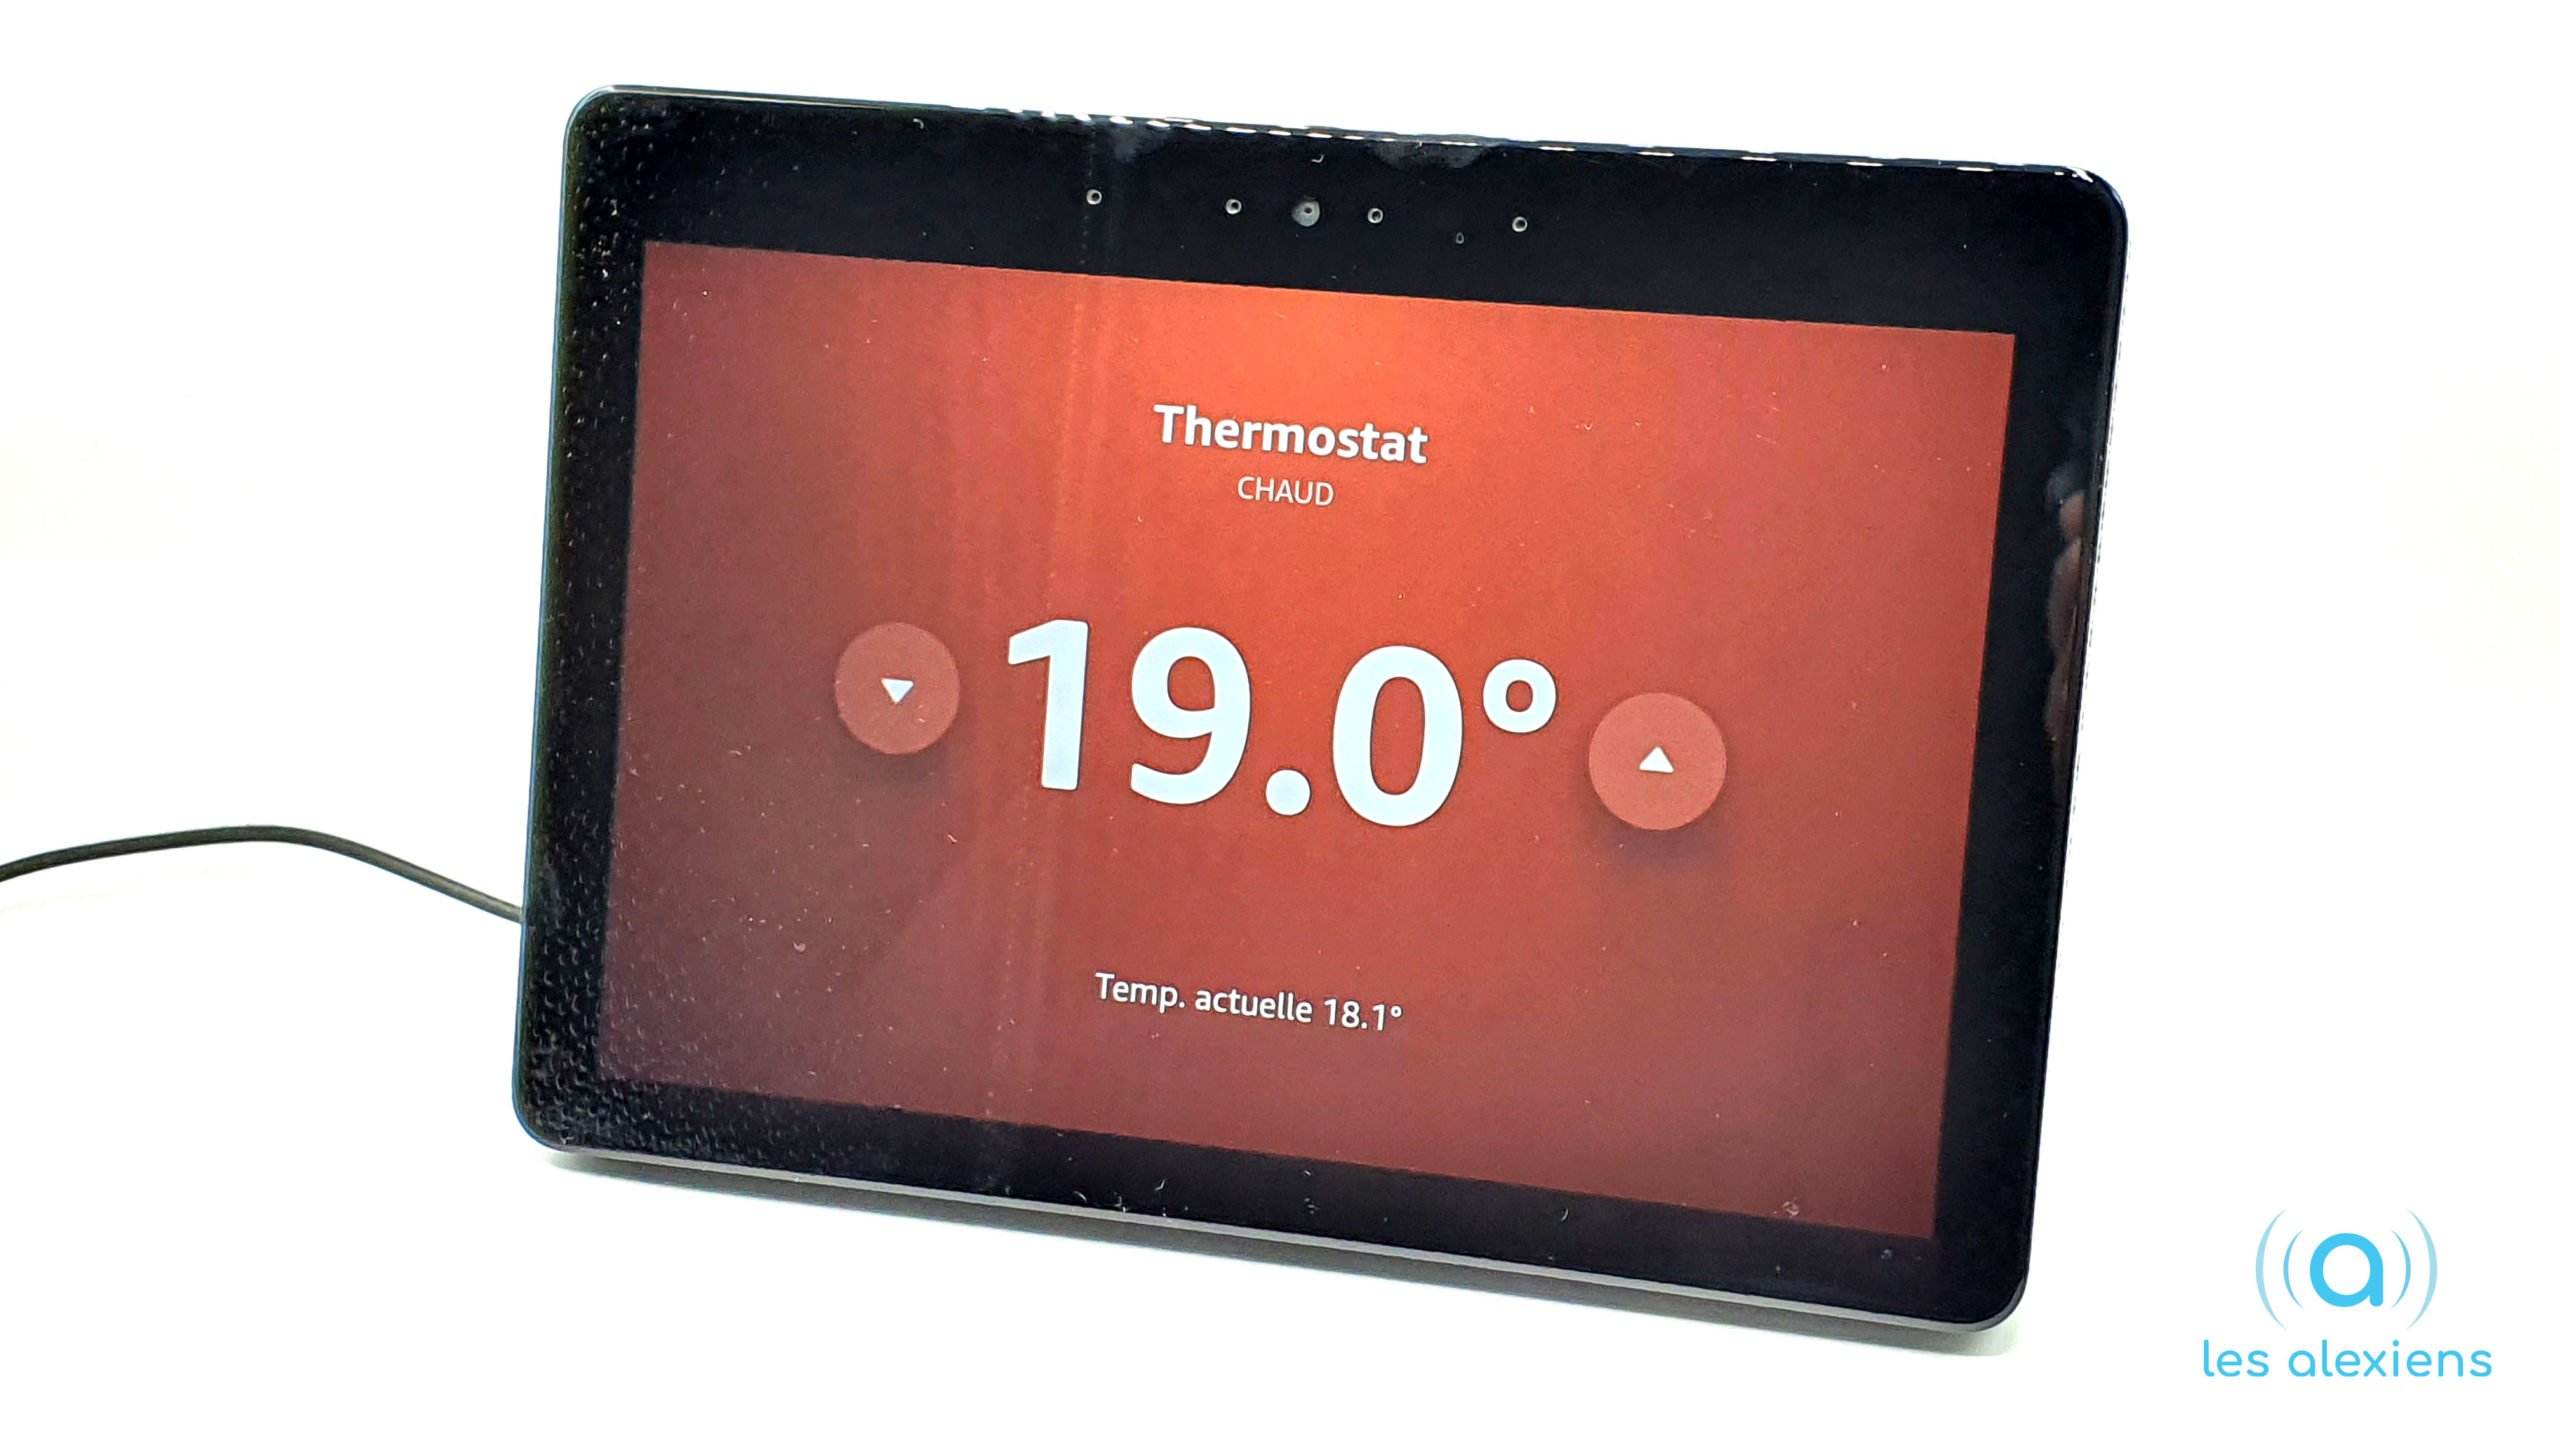 Netatmo Thermostat connecté by Starck : meilleur prix et actualités - Les  Numériques